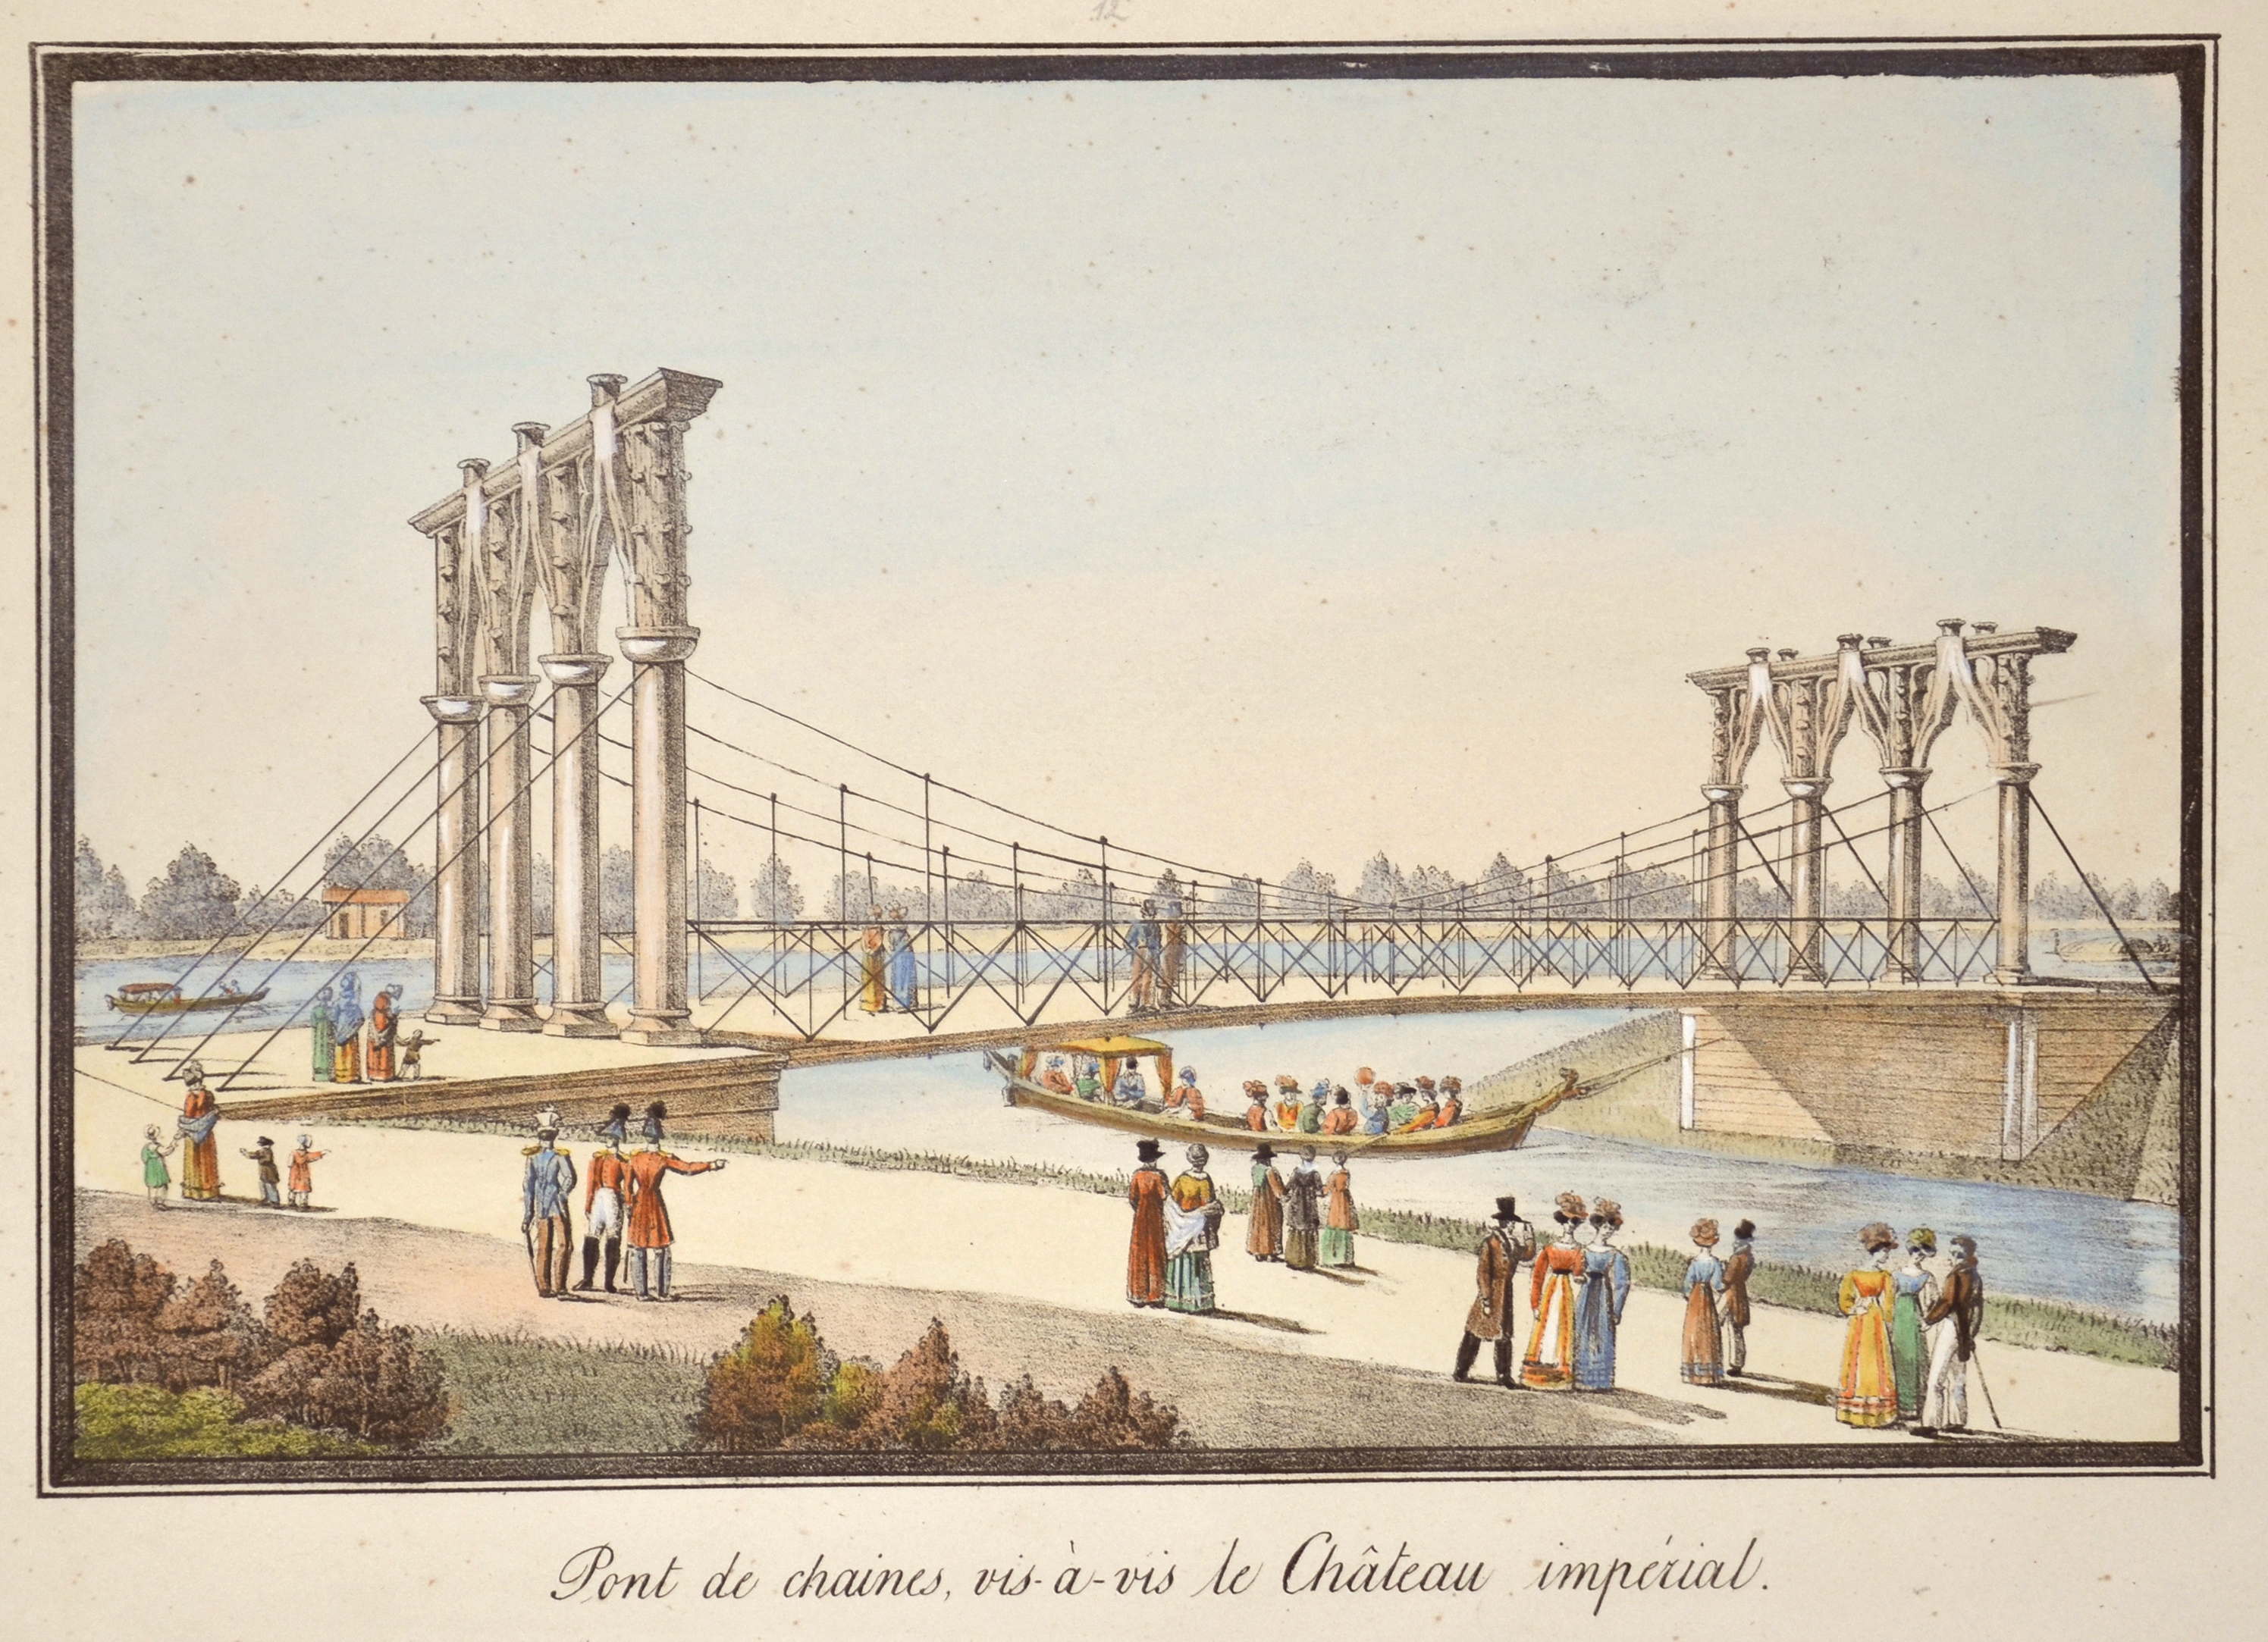 Anonymus  Pont de chaines, vis-à-vis le Chàteau impérial.